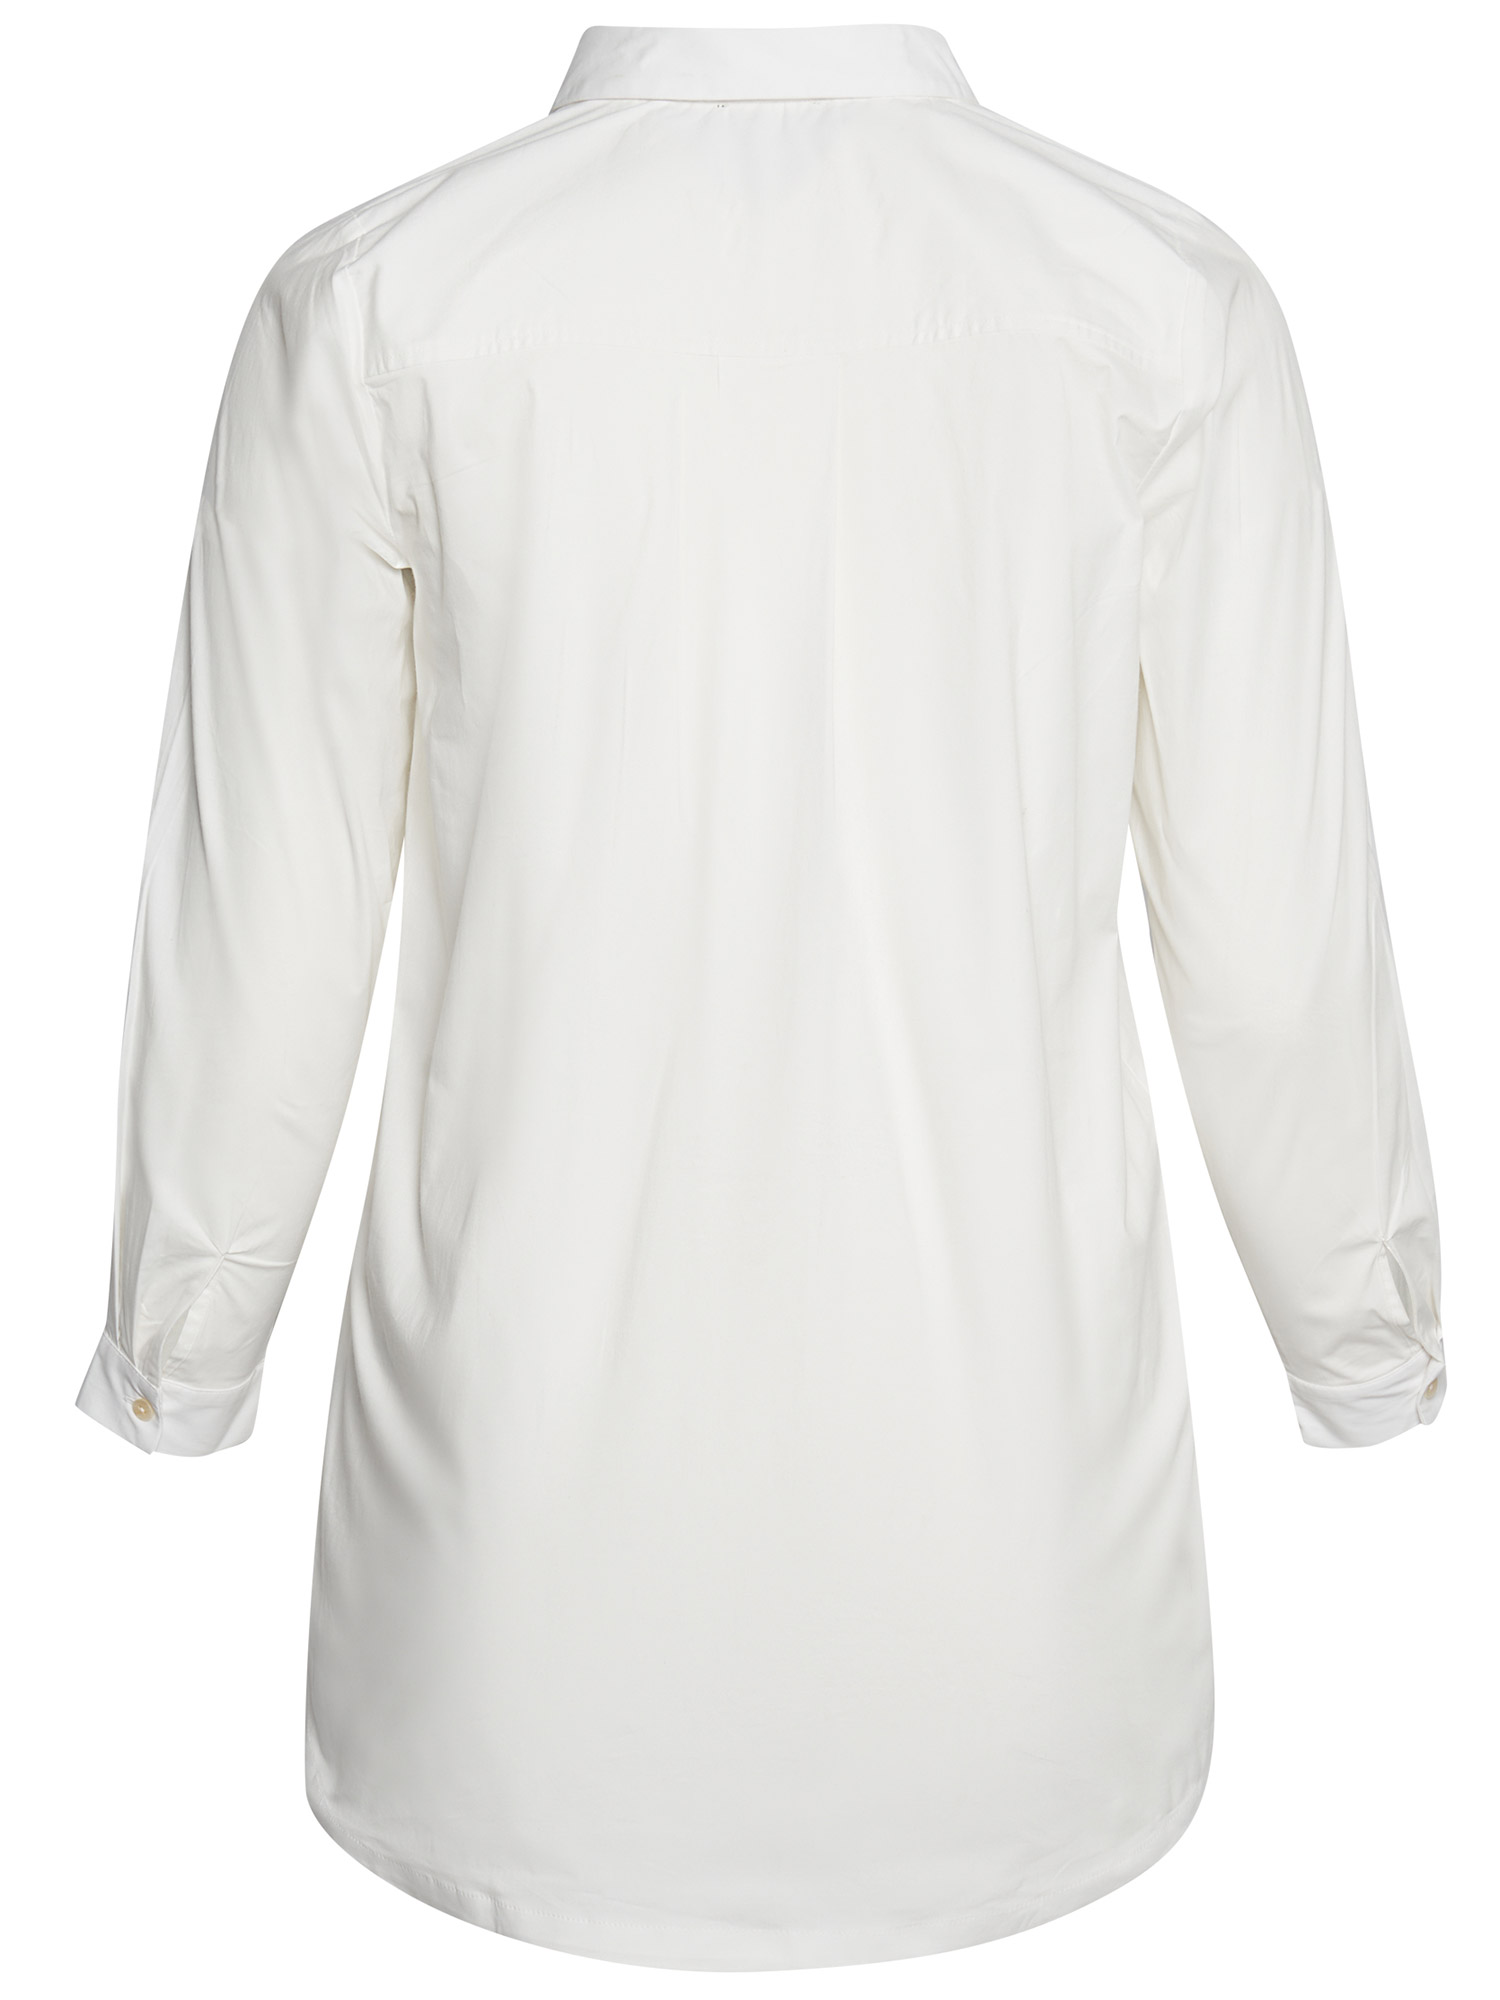 Virginia - Hvid skrækbar bomulds skjorte fra Aprico